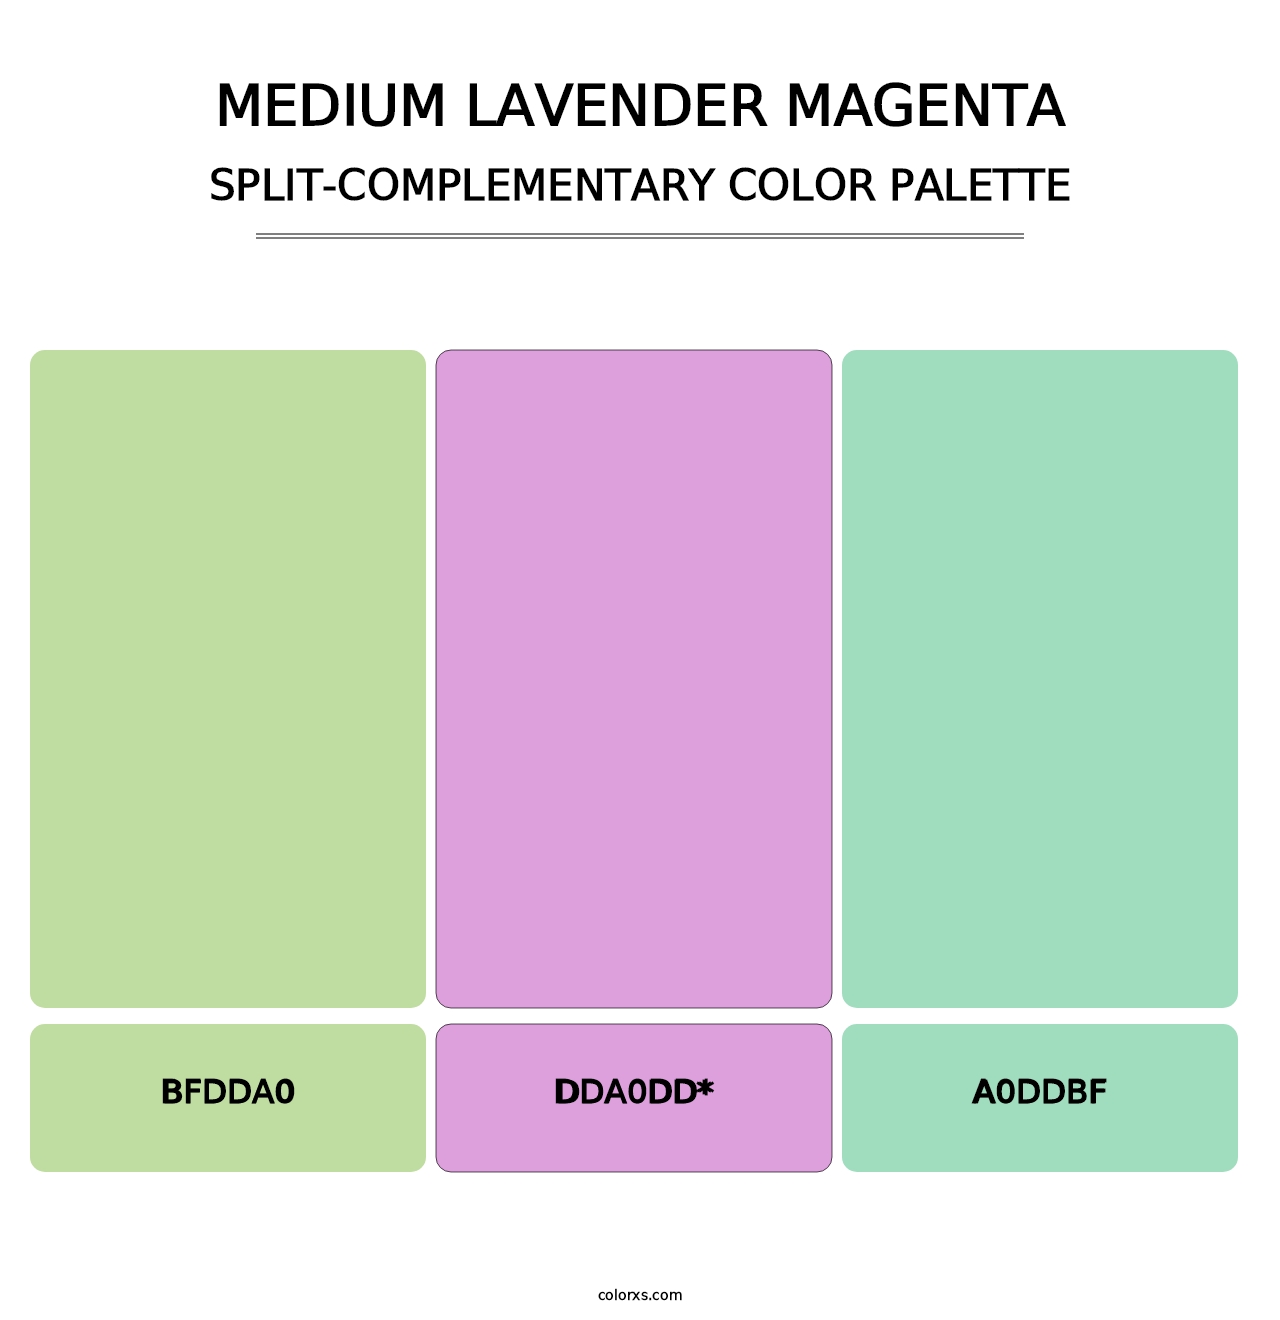 Medium Lavender Magenta - Split-Complementary Color Palette